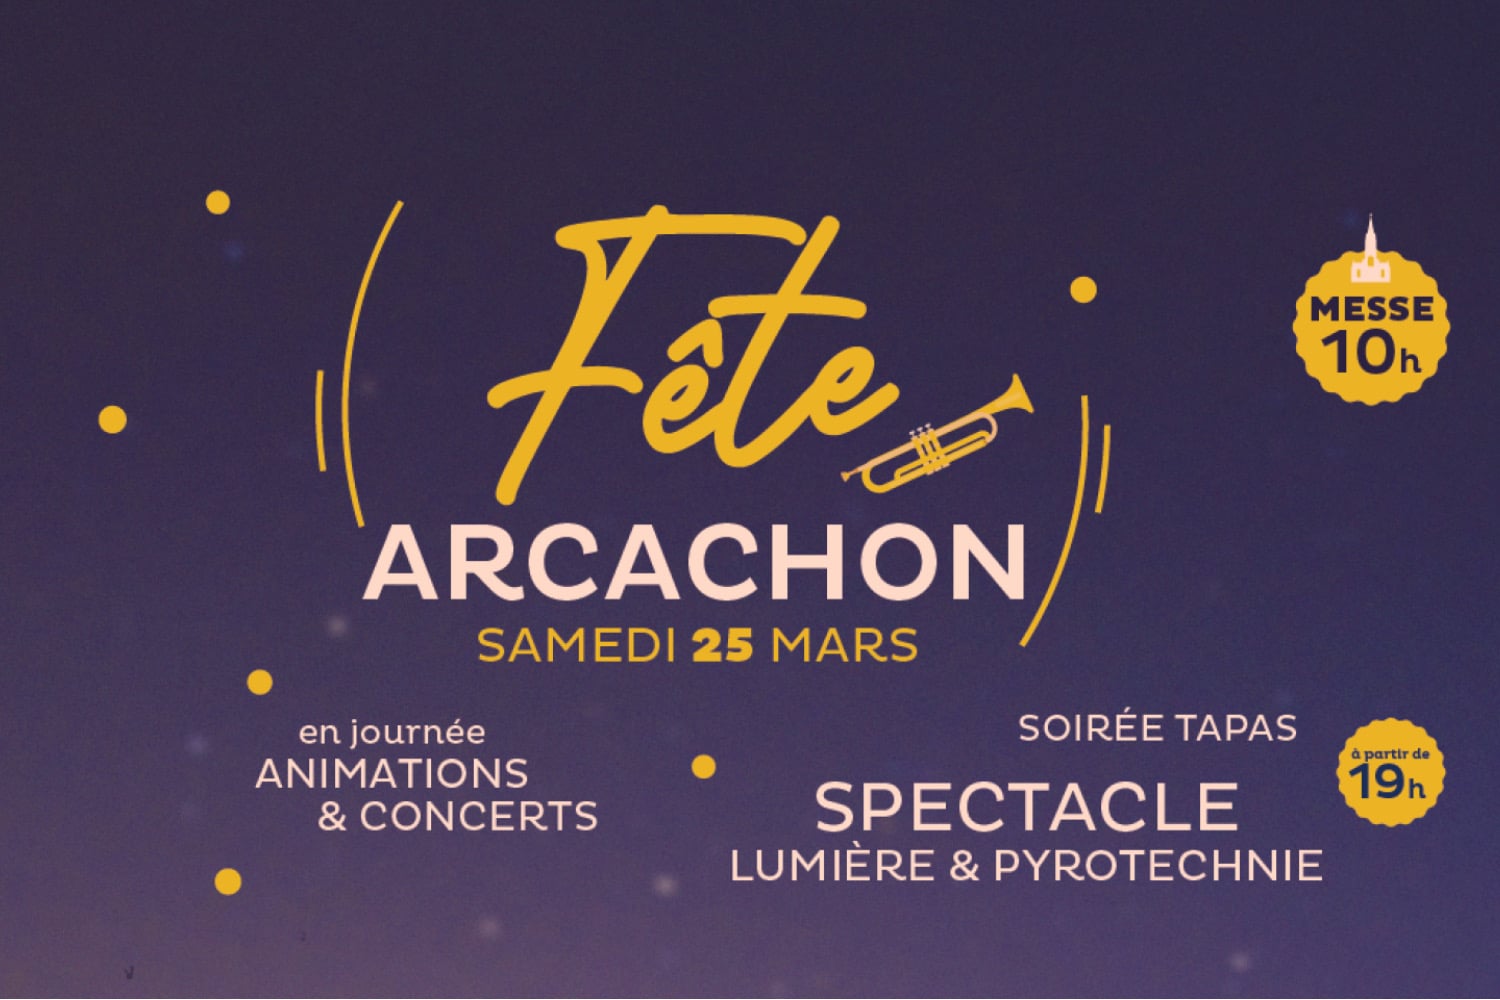 Arcachon en fête 🎉 le samedi 25 mars 2023 pour le jour de l’Annonciation et de la fête patronale de la ville